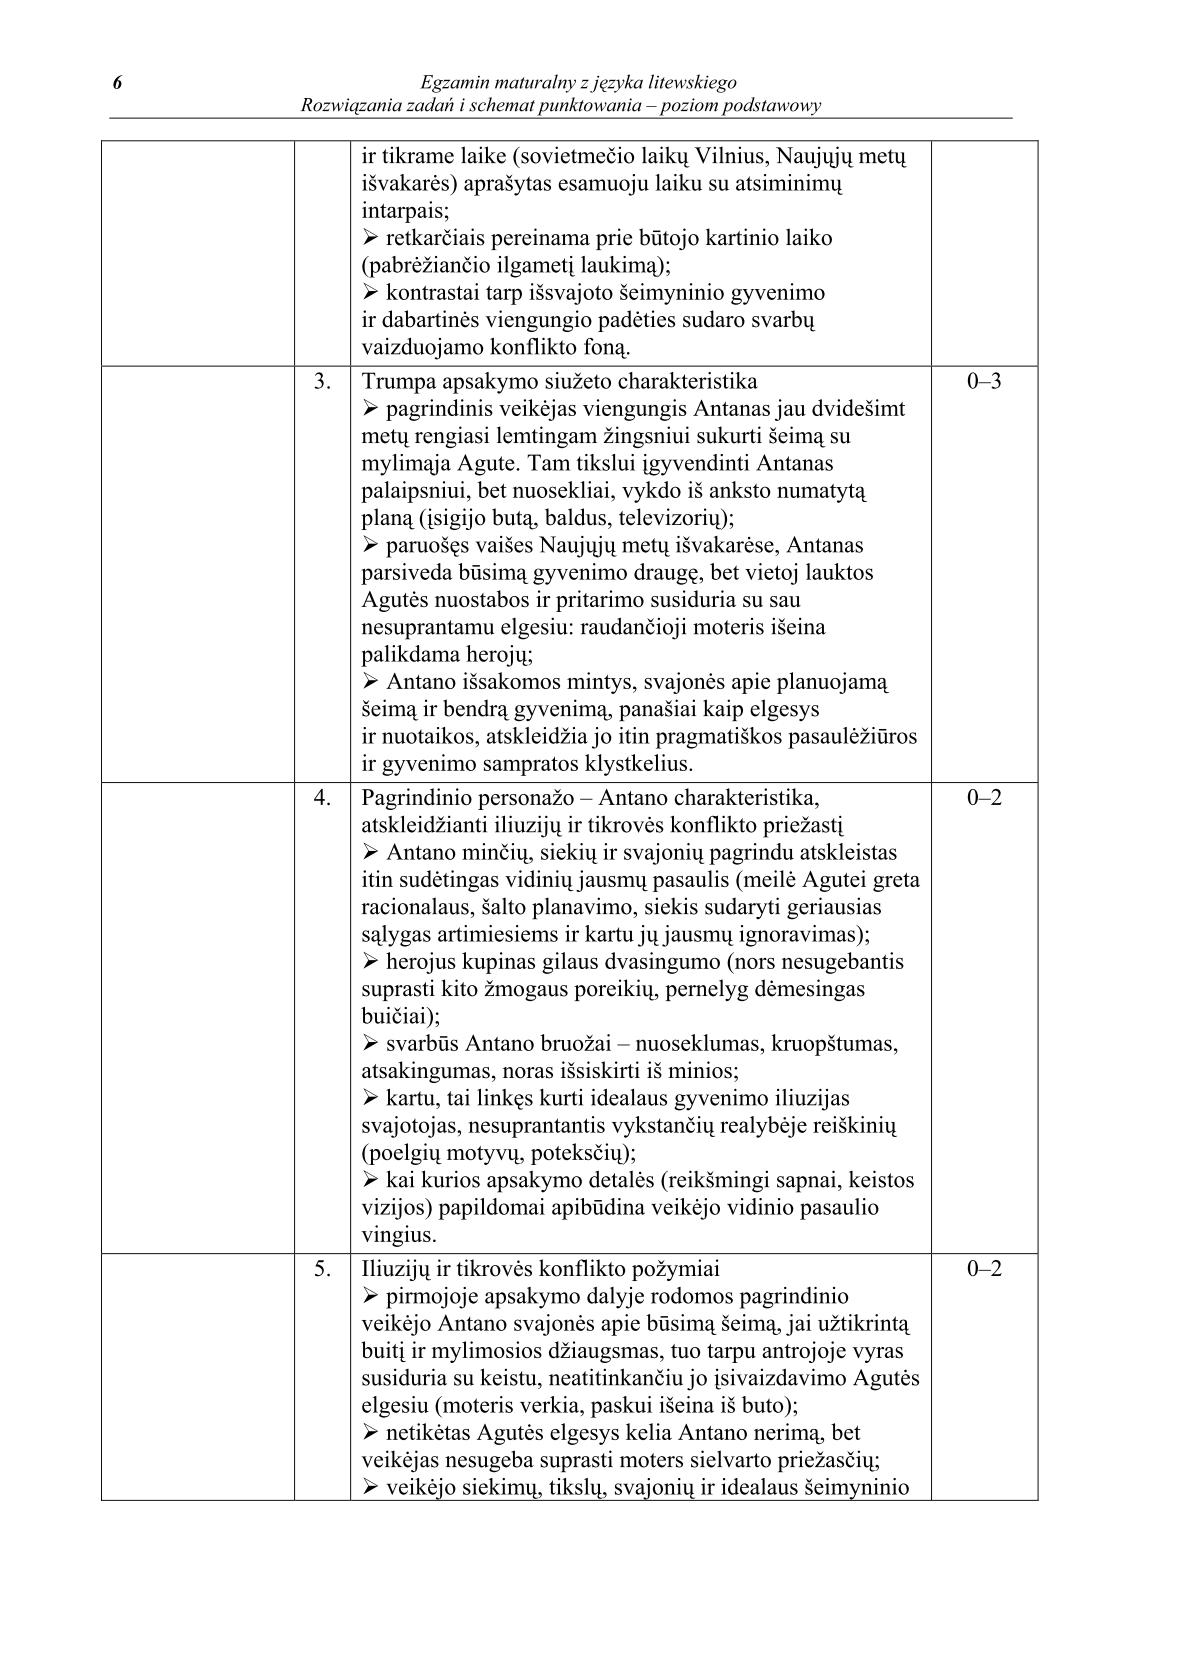 odpowiedzi-jezyk-litewski-poziom-podstawowy-matura-2014-str.6